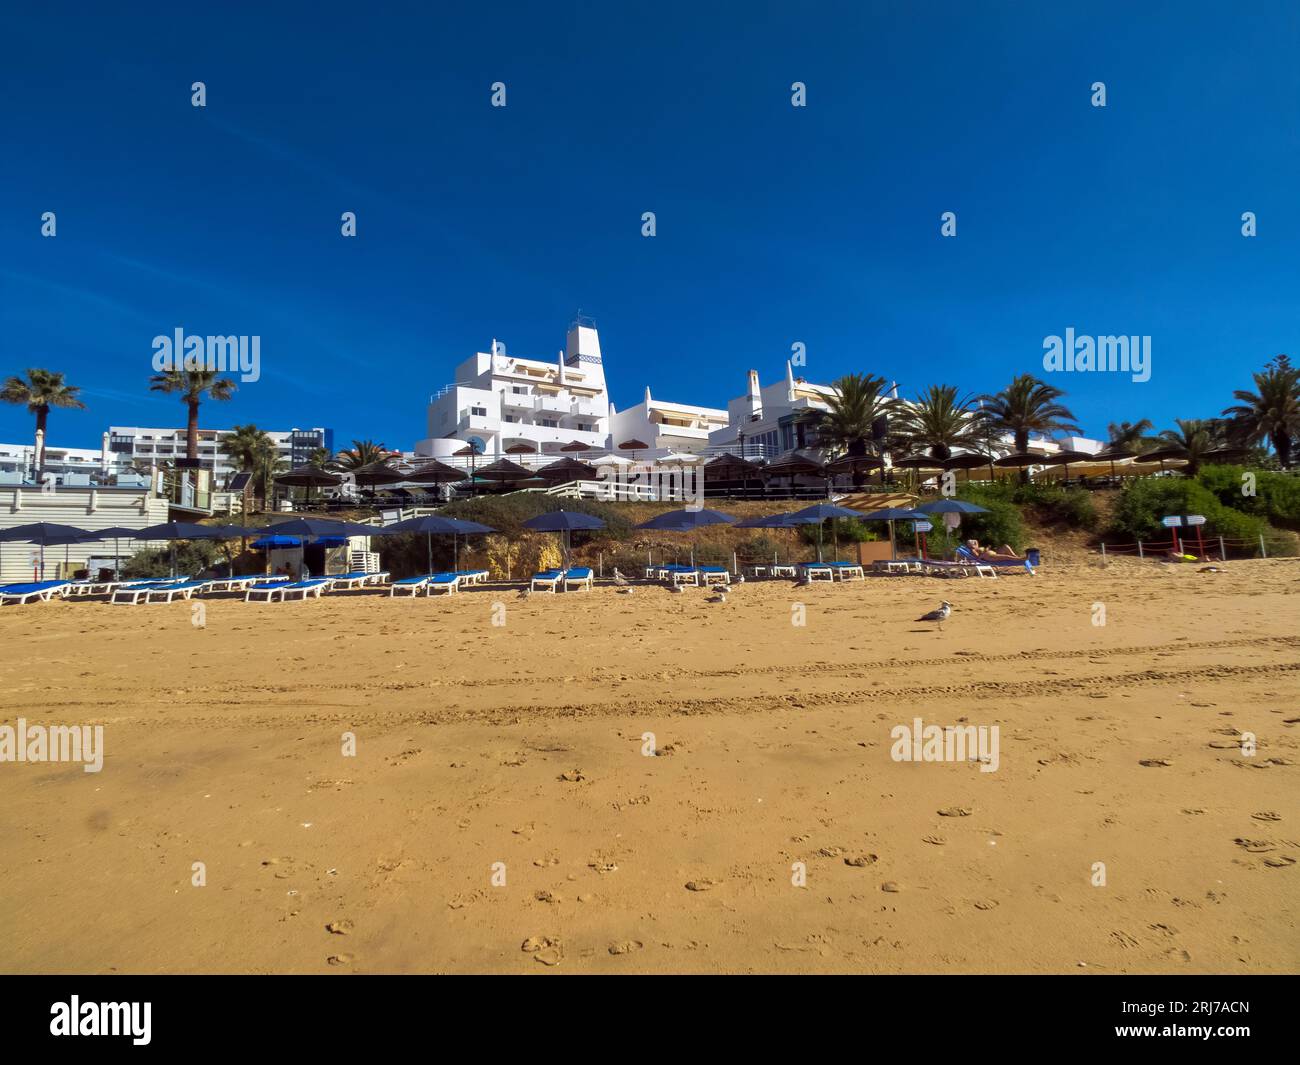 Praia da Oura è una spiaggia con bandiera blu all'interno del comune di Albufeira, in Algarve, Portogallo. La spiaggia si trova nel quartiere orientale di Albufeira i. Foto Stock